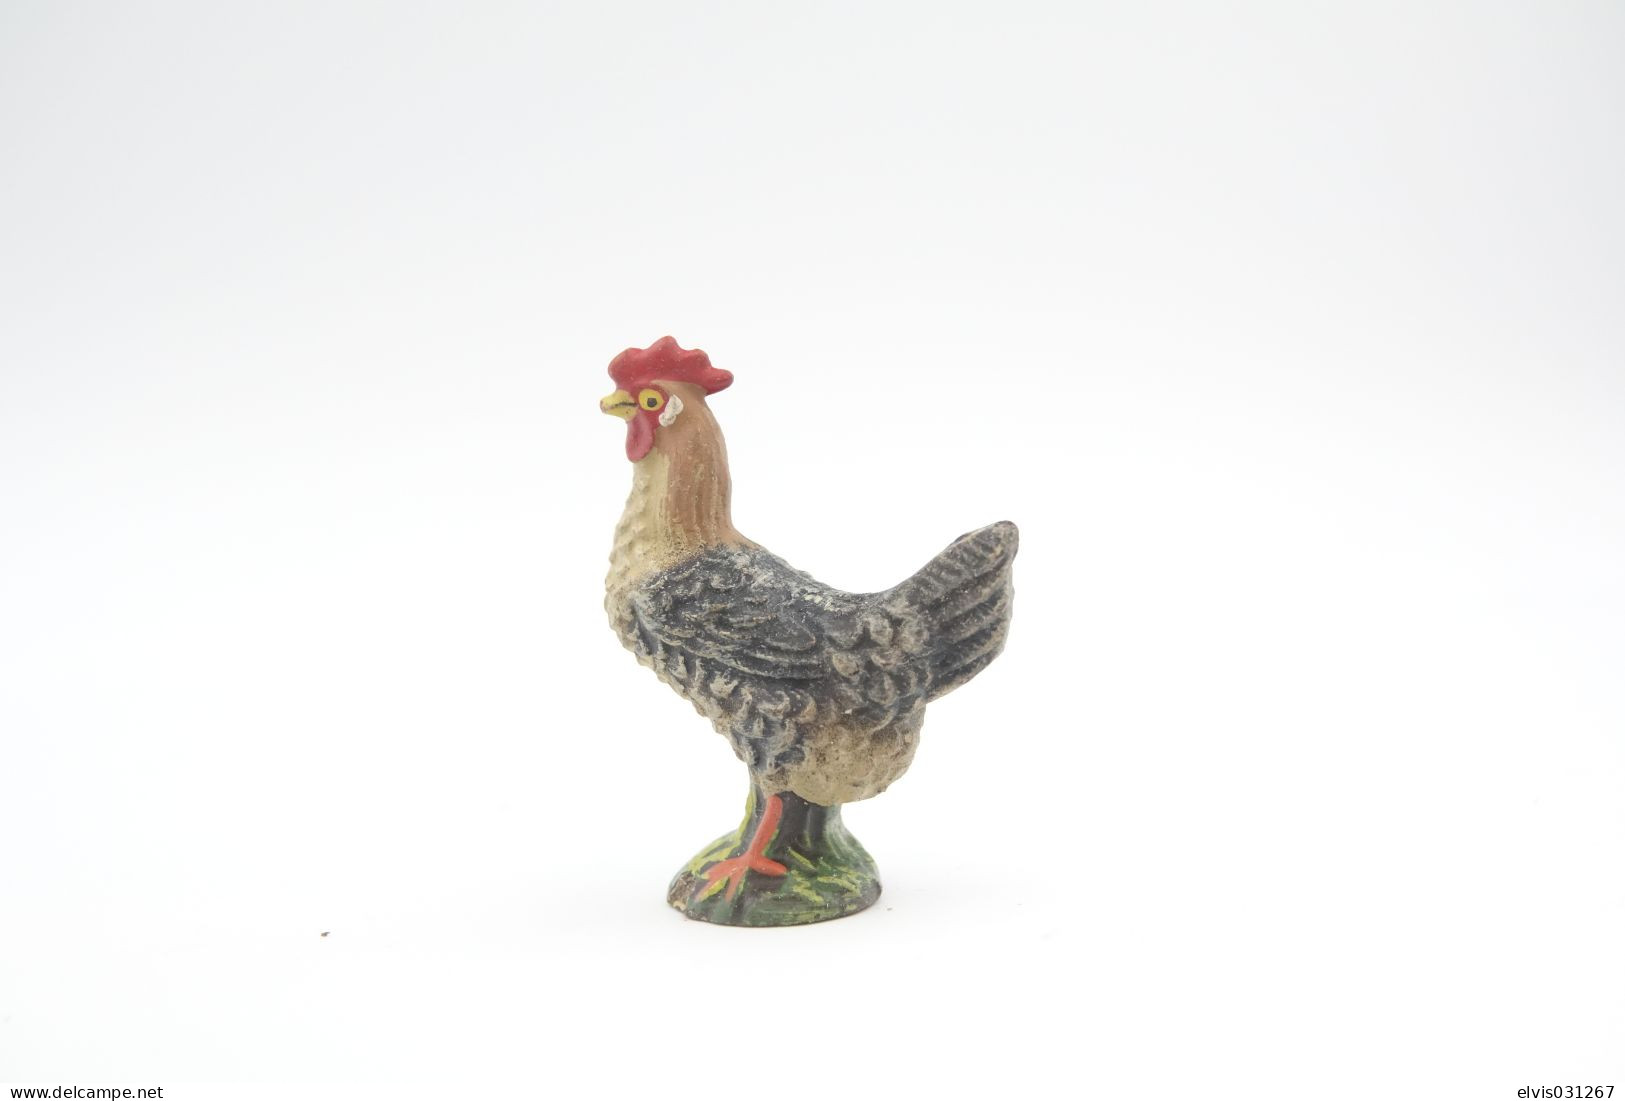 Elastolin, Lineol Hauser, Animals Chicken N°4051, Vintage Toy 1930's - Figurines